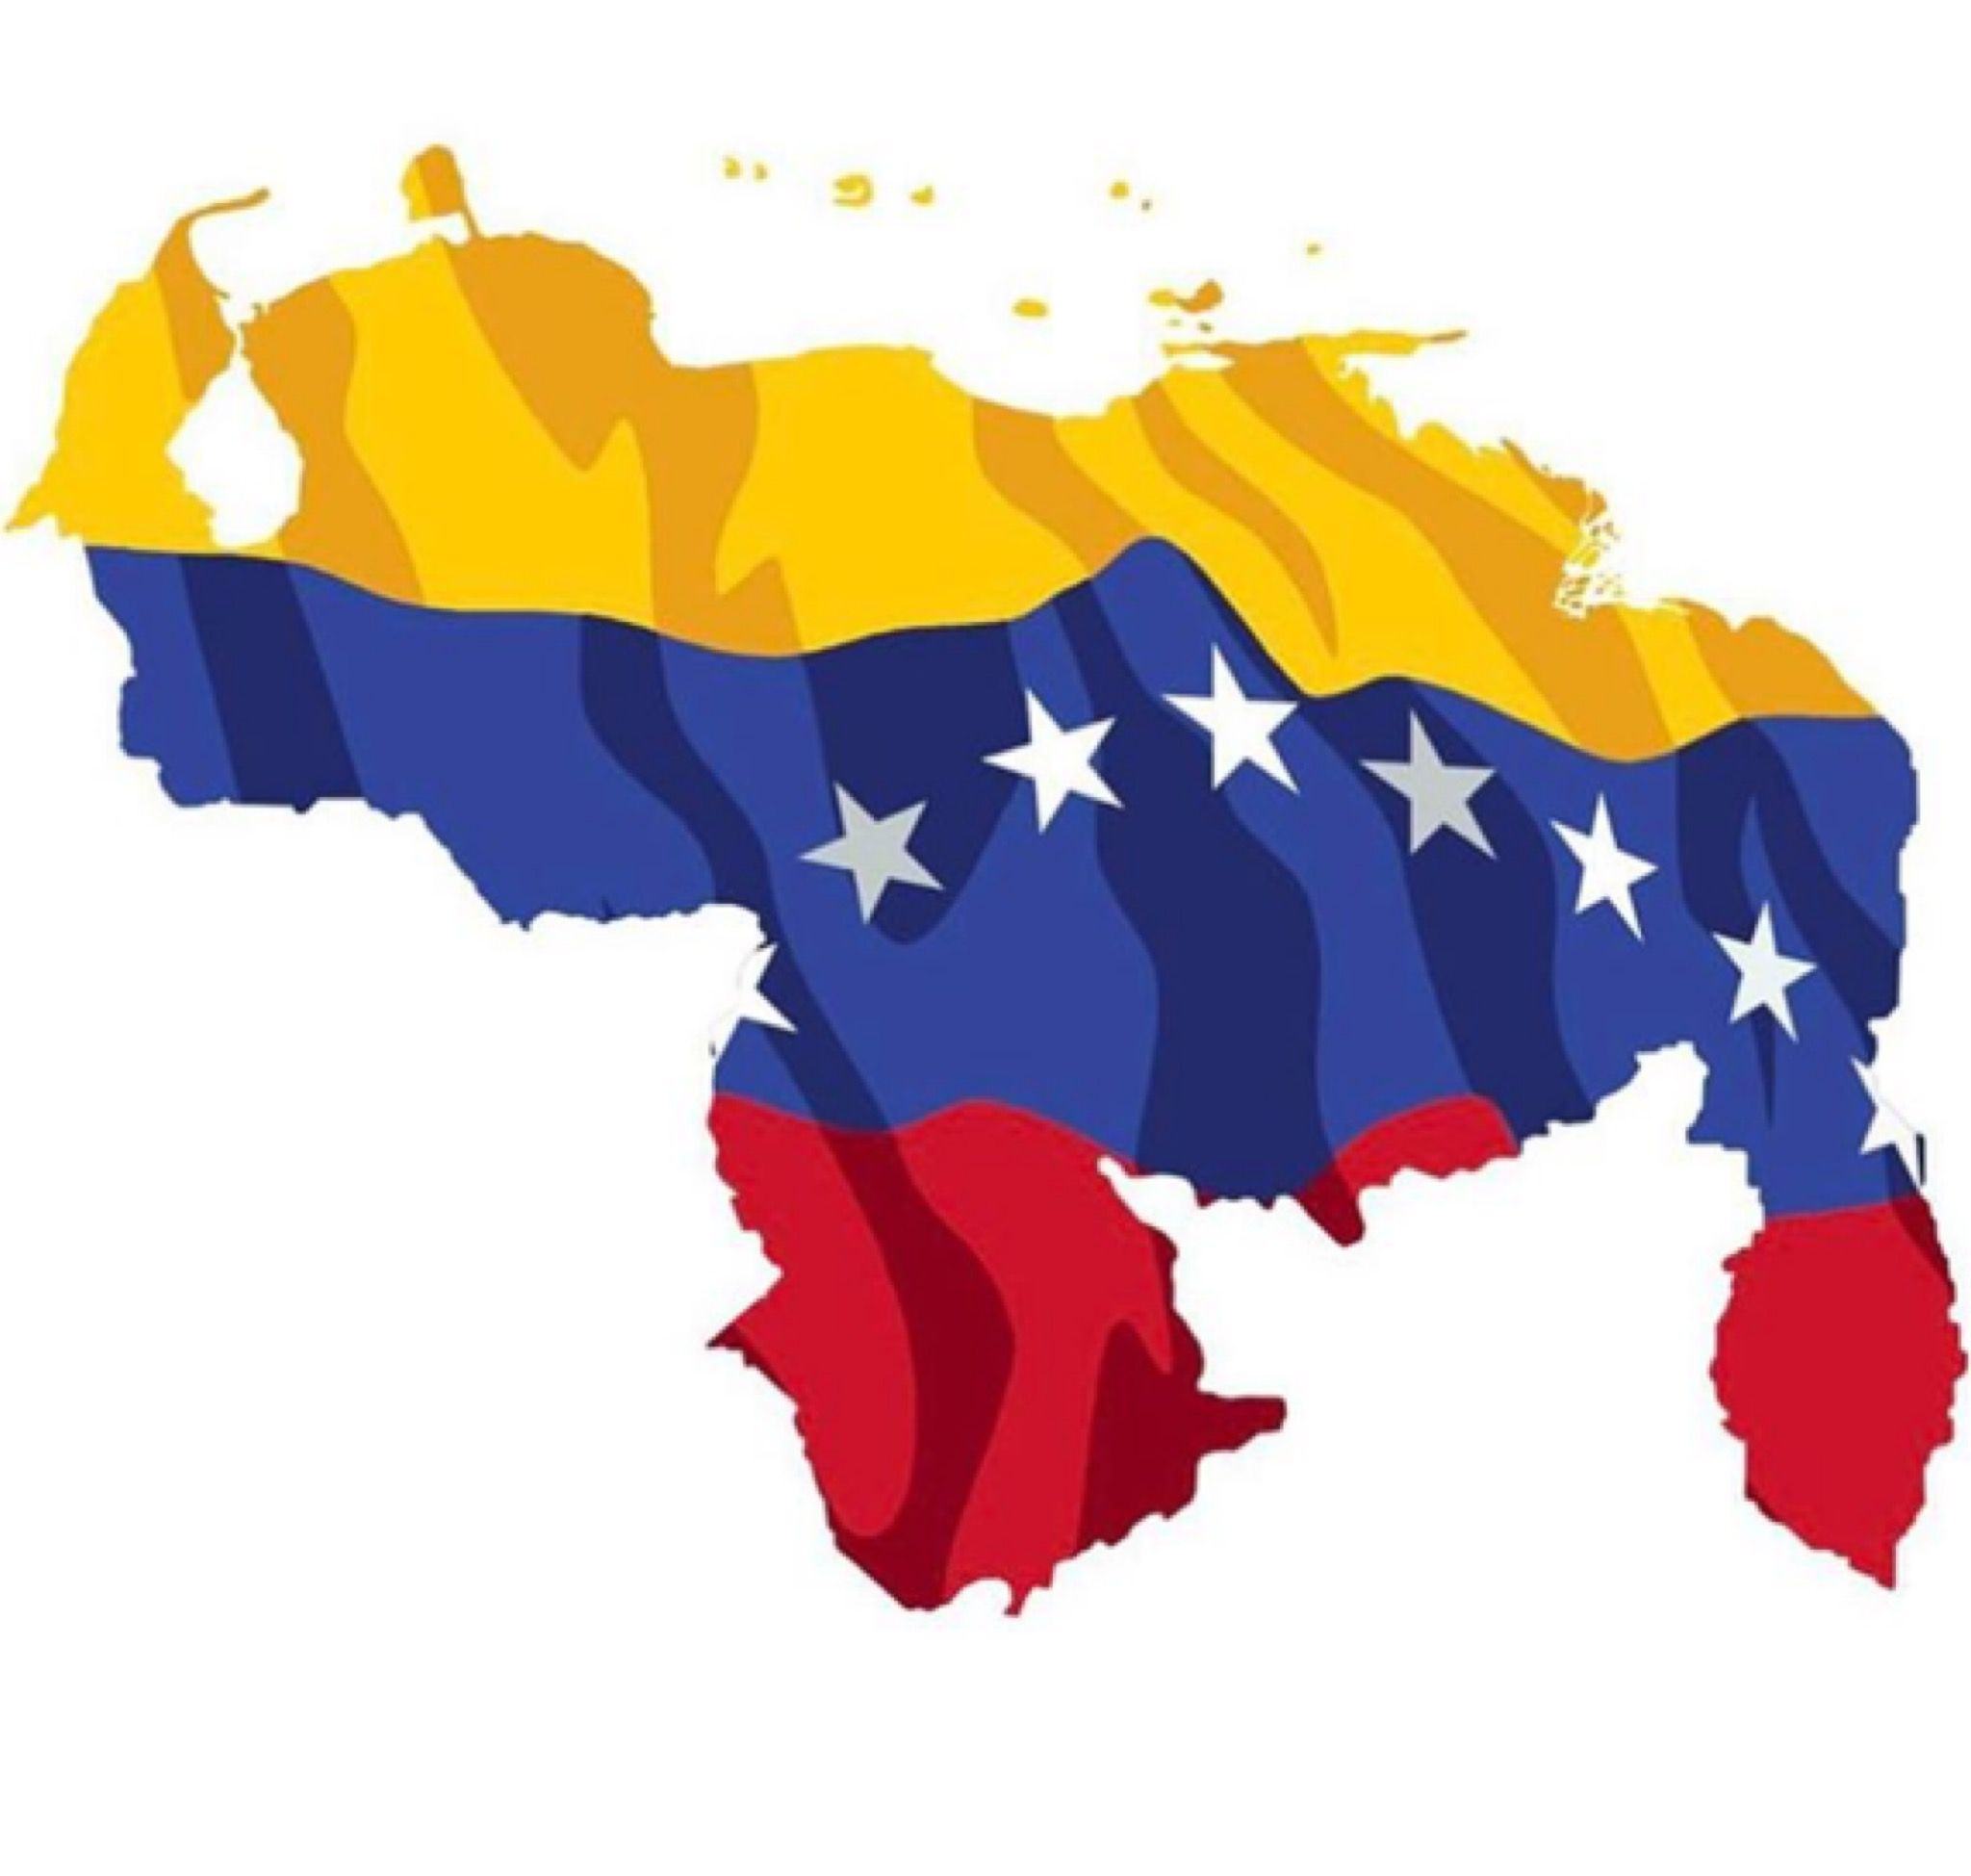 2048x1949 marybettandrade | Bandera de venezuela imagen, Venezuela, Bandera de venezuela